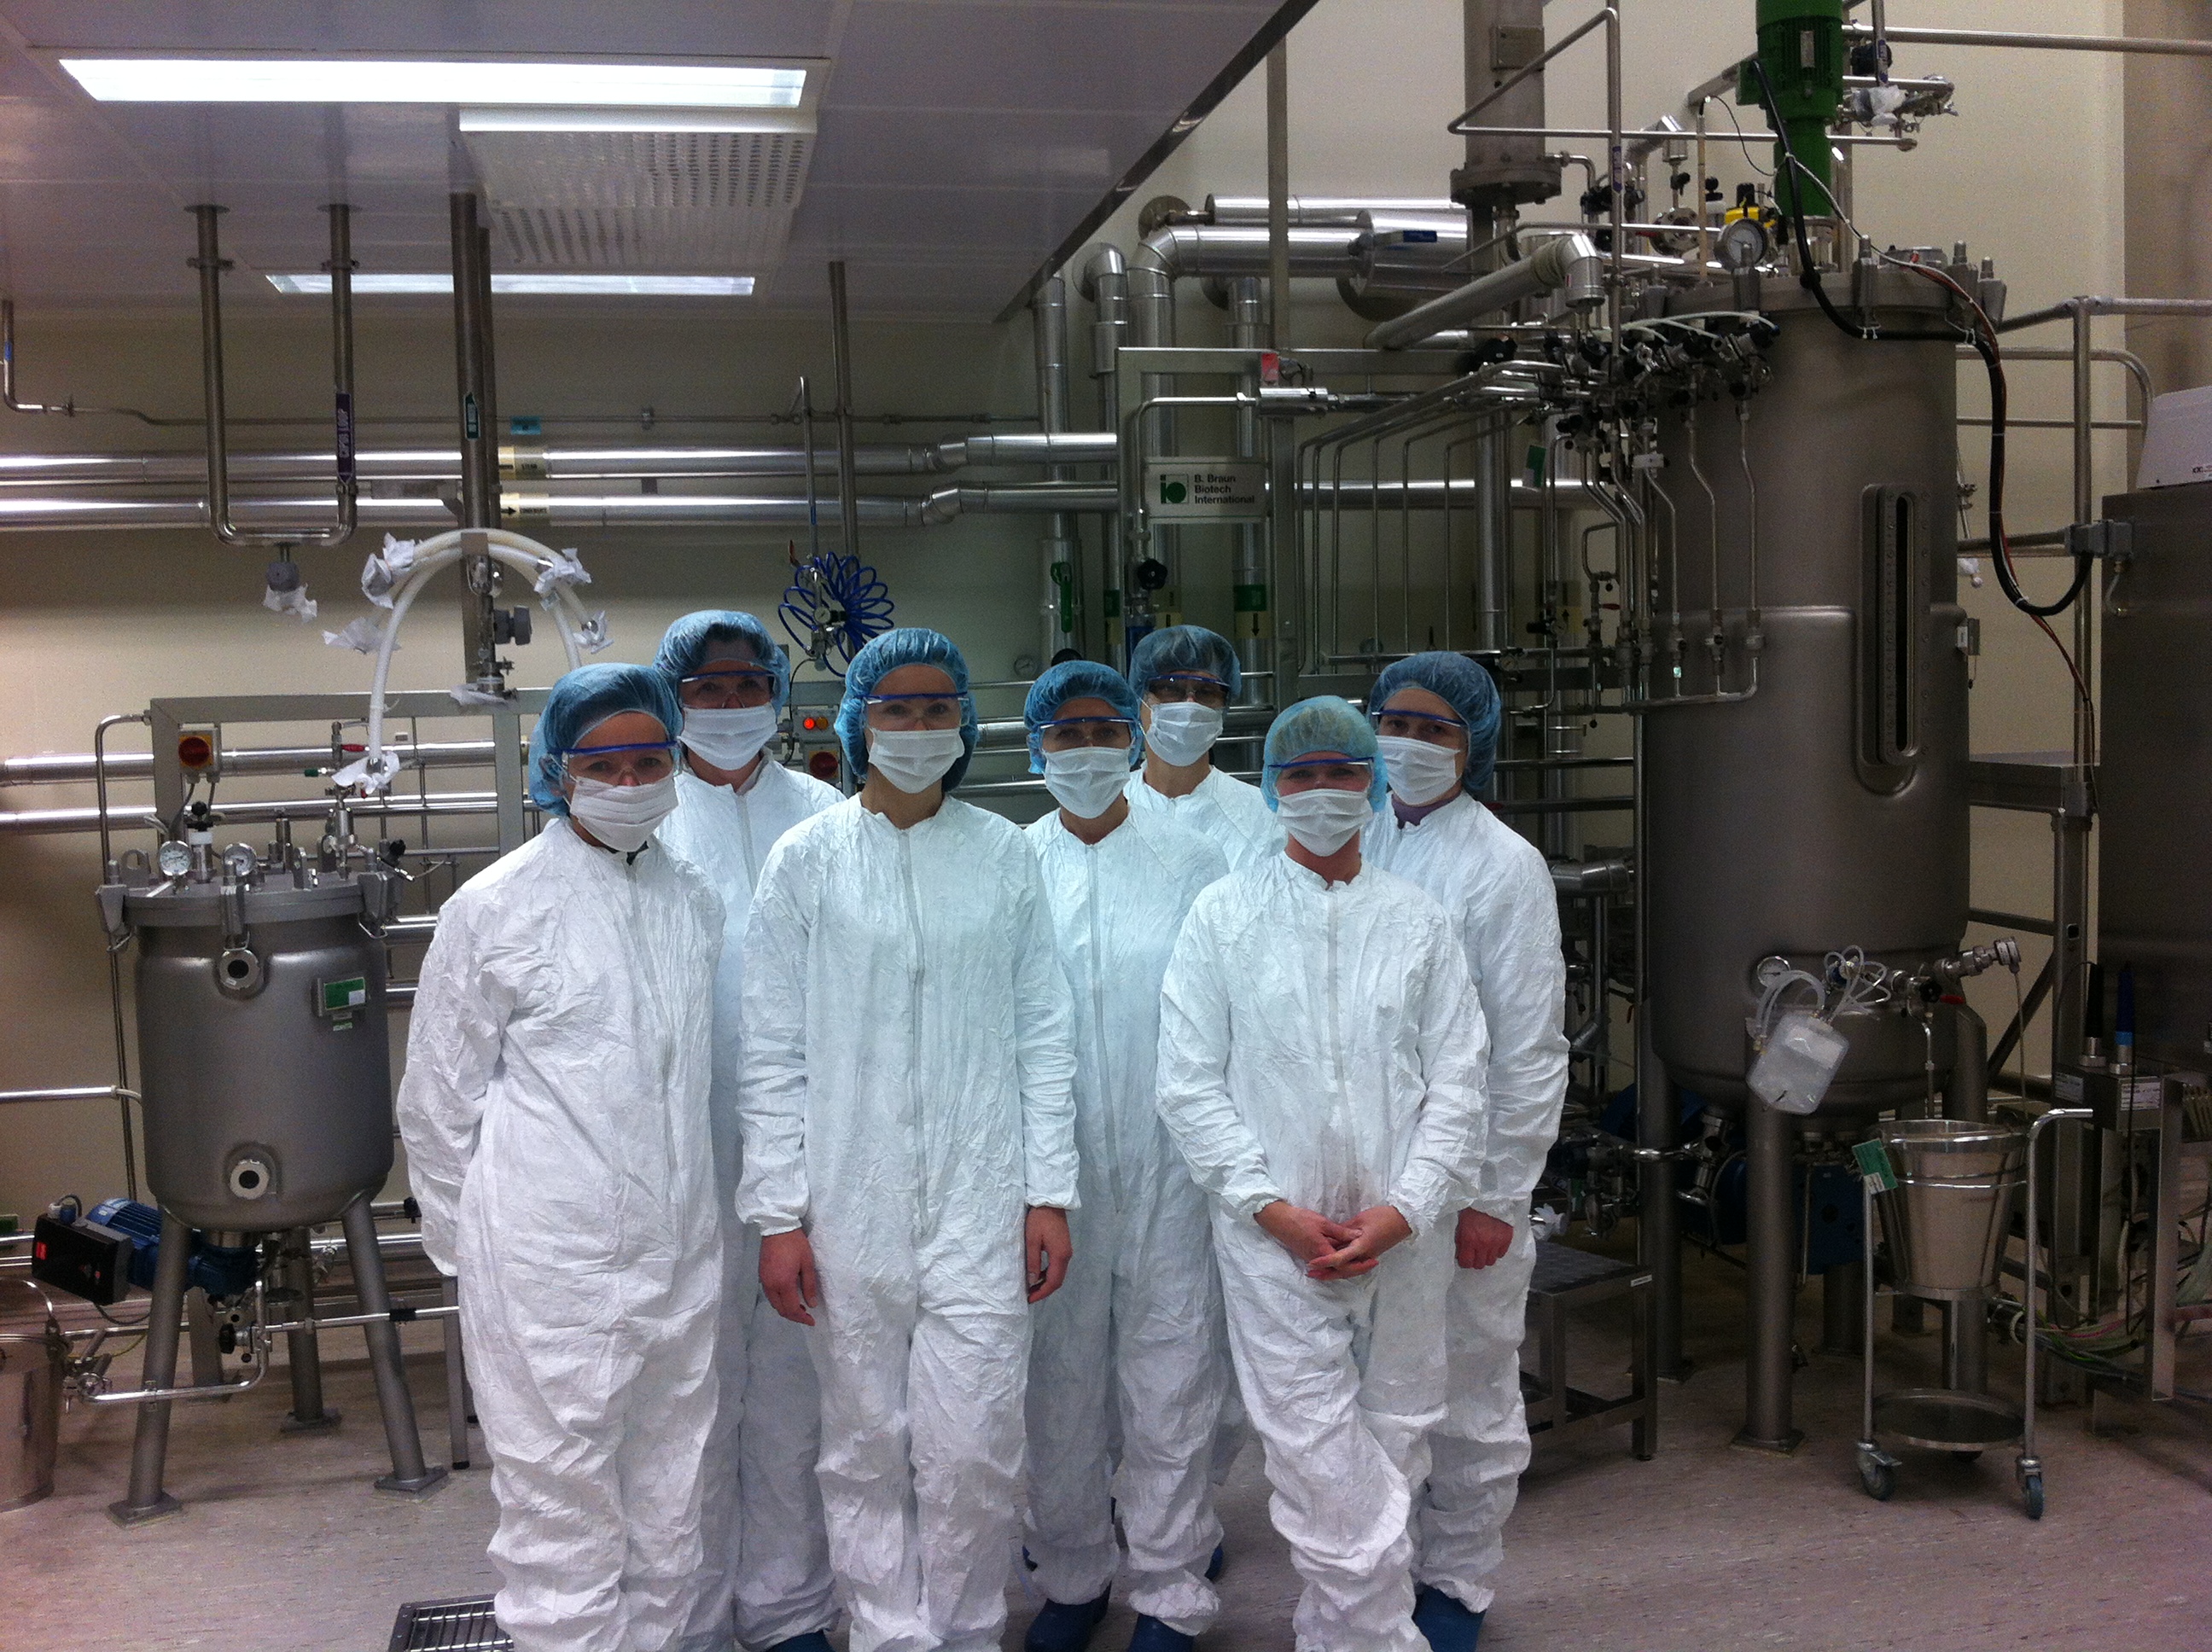 Pirmās Biofarmaceitisko zāļu skolas dalībnieki Sicor Biotech ražotnes apmeklējumā Viļņā